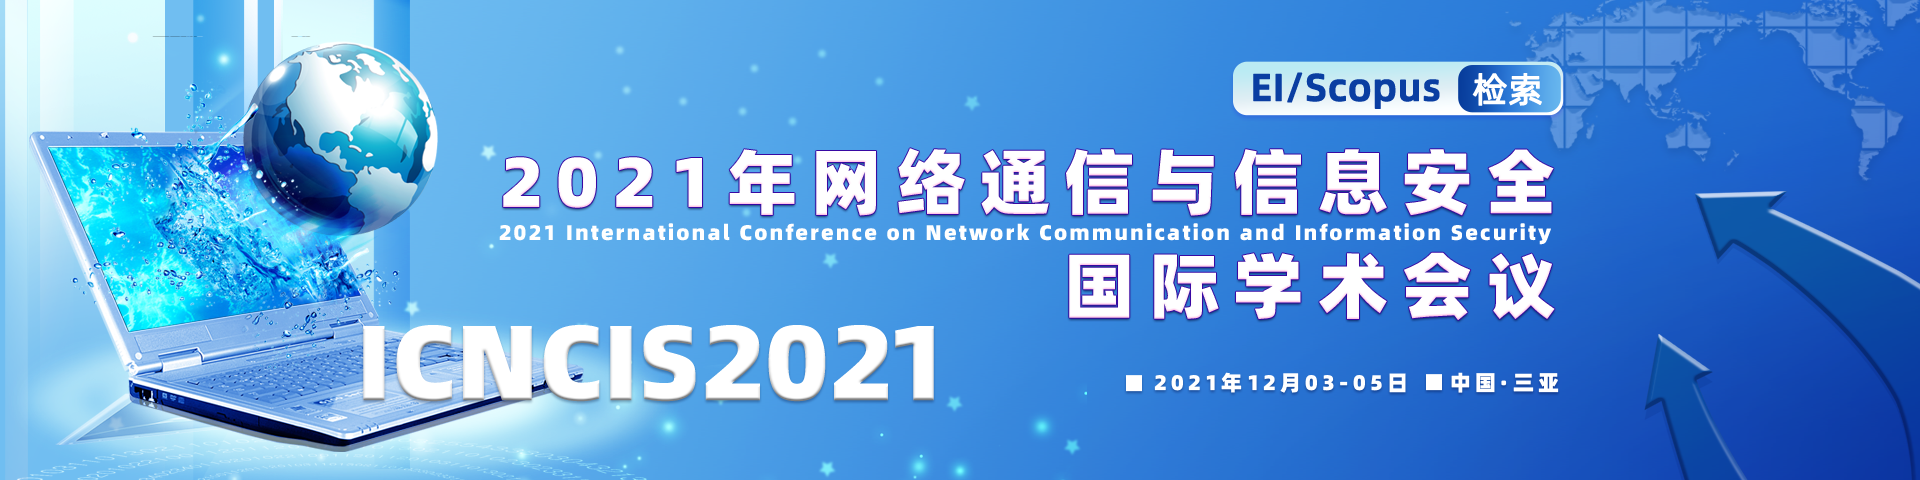 12月三亚ICNCIS 2021-banner中-何霞丽-20210520.png